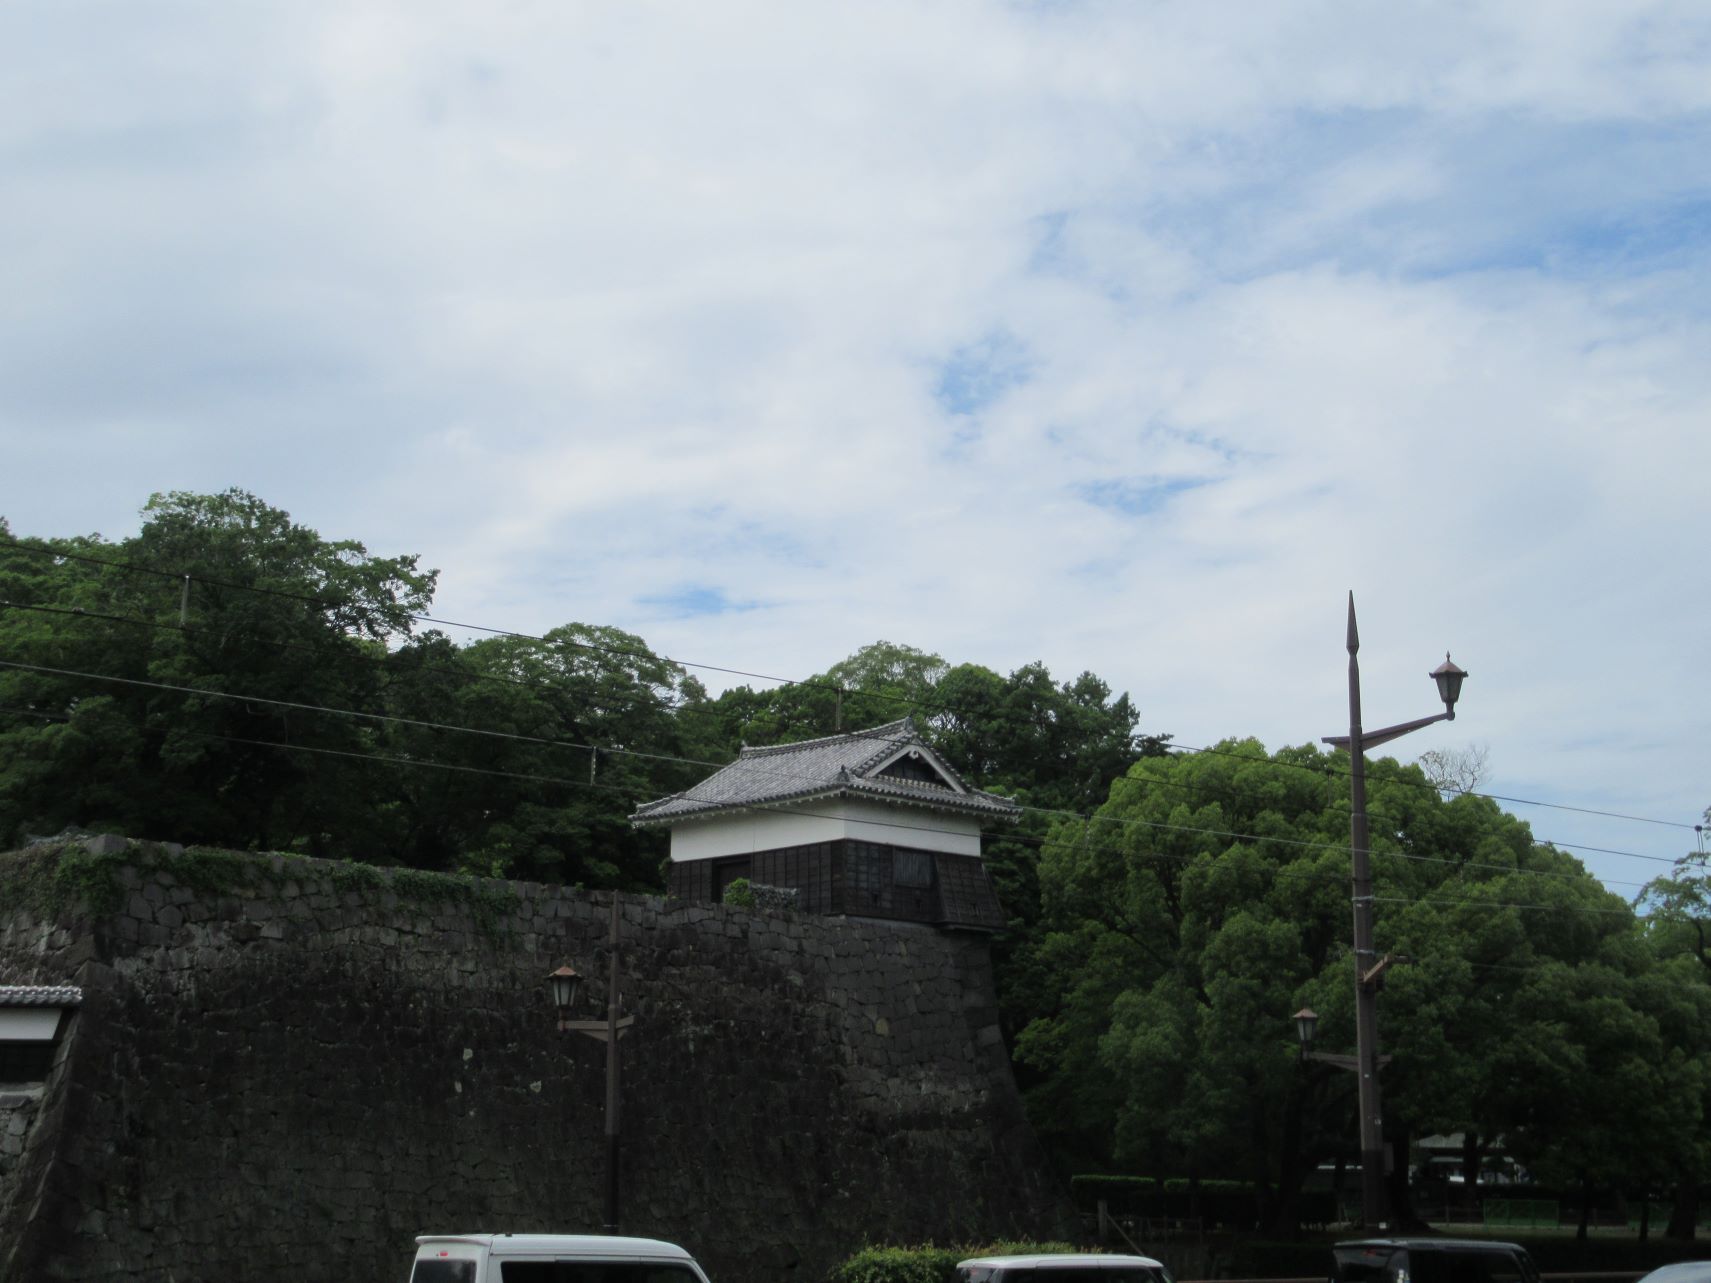 熊本城の建物と石垣。